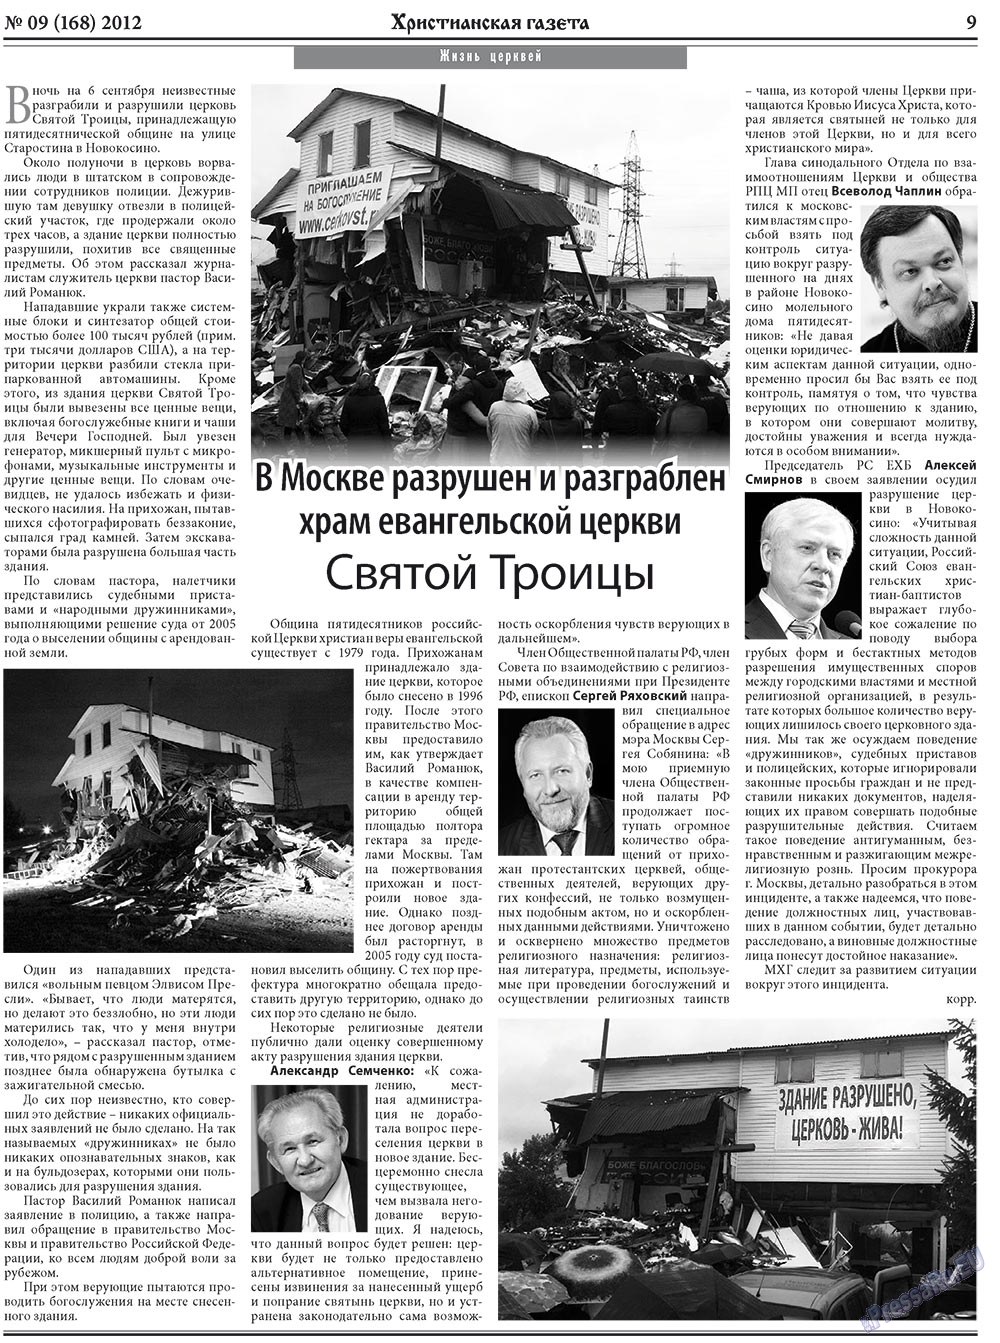 Христианская газета, газета. 2012 №9 стр.9